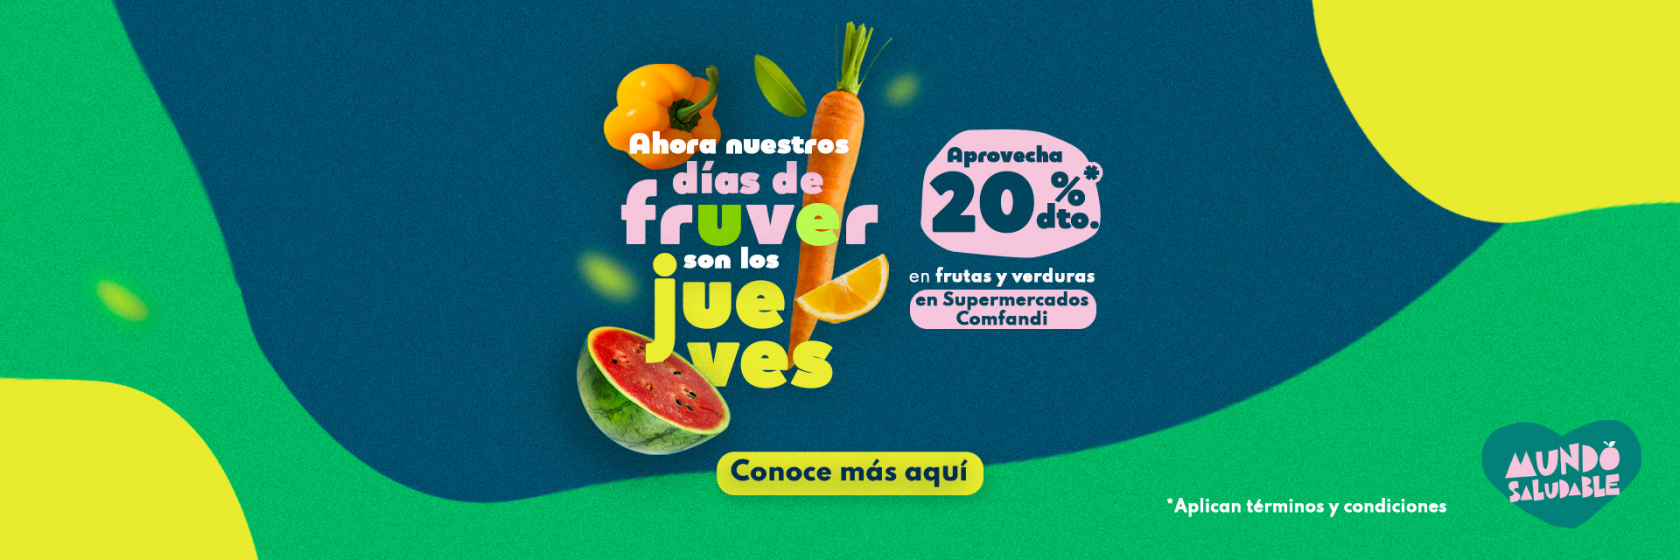 Jueves de frutas y verduras - 20% de descuento